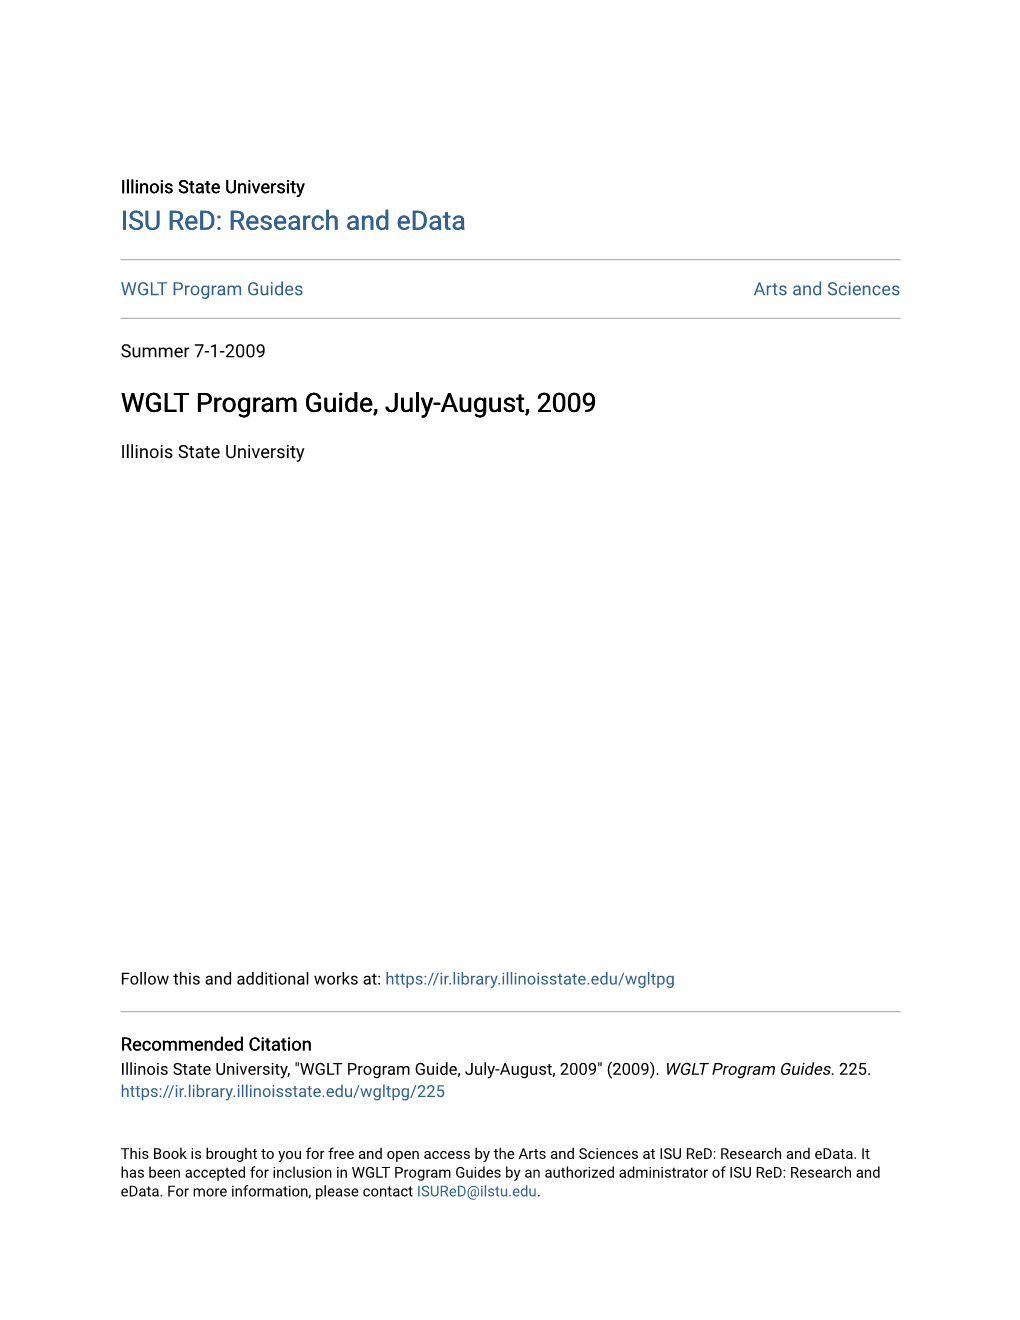 WGLT Program Guide, July-August, 2009